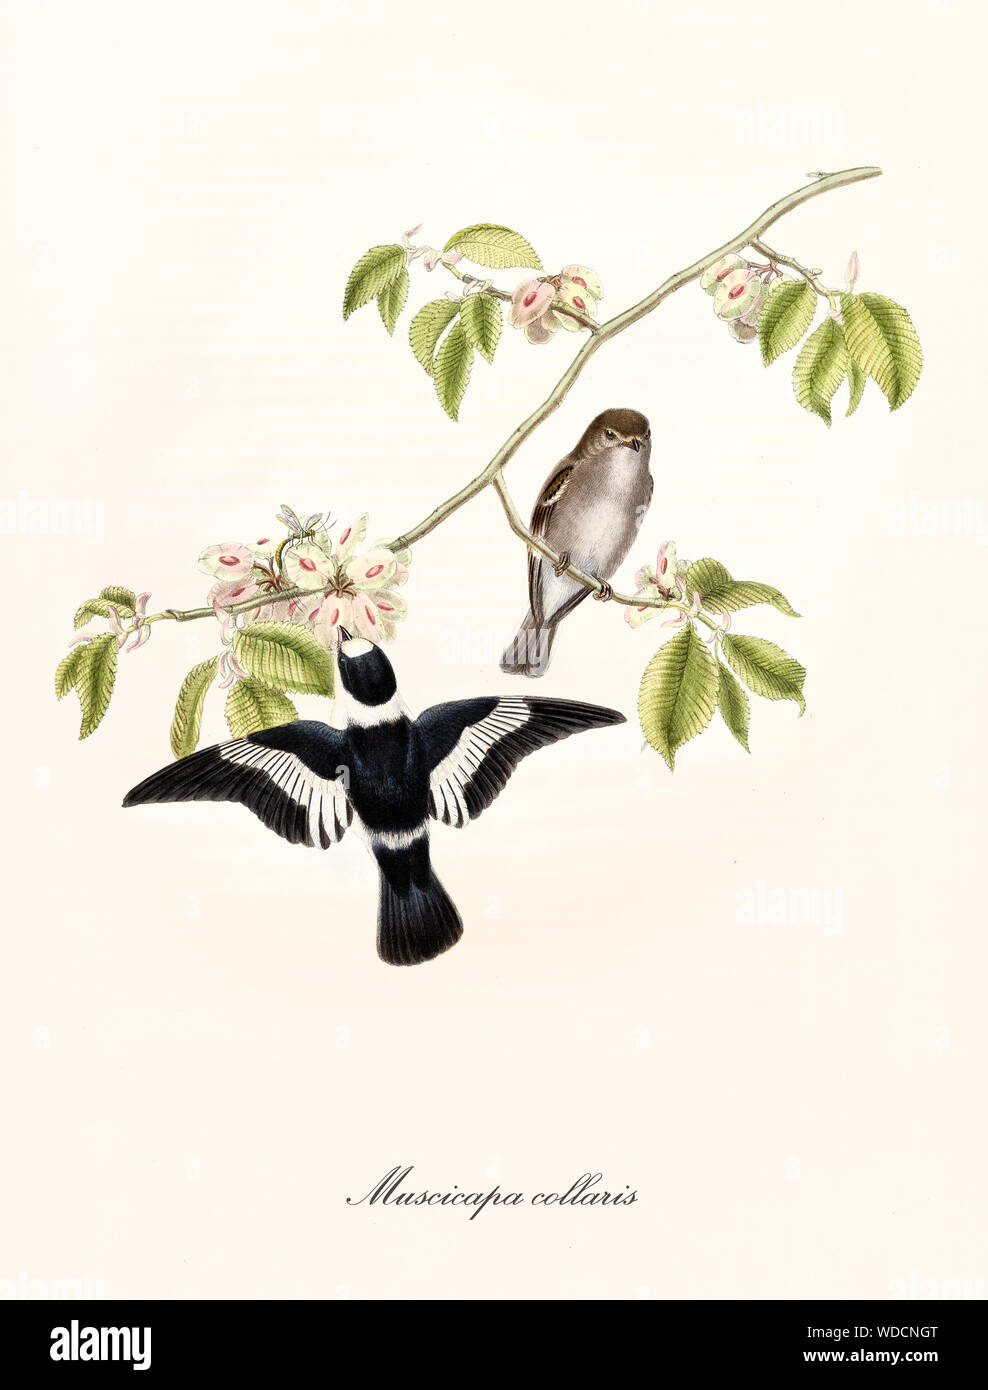 Dos pequeñas lindas aves en una sola rama floral delgado. Es un pájaro volando cerca de algunas flores en busca de alimentos. Collared Flycatcher (Ficedula albicollis) por John Gould publ. En Londres 1862 - 1873 Foto de stock